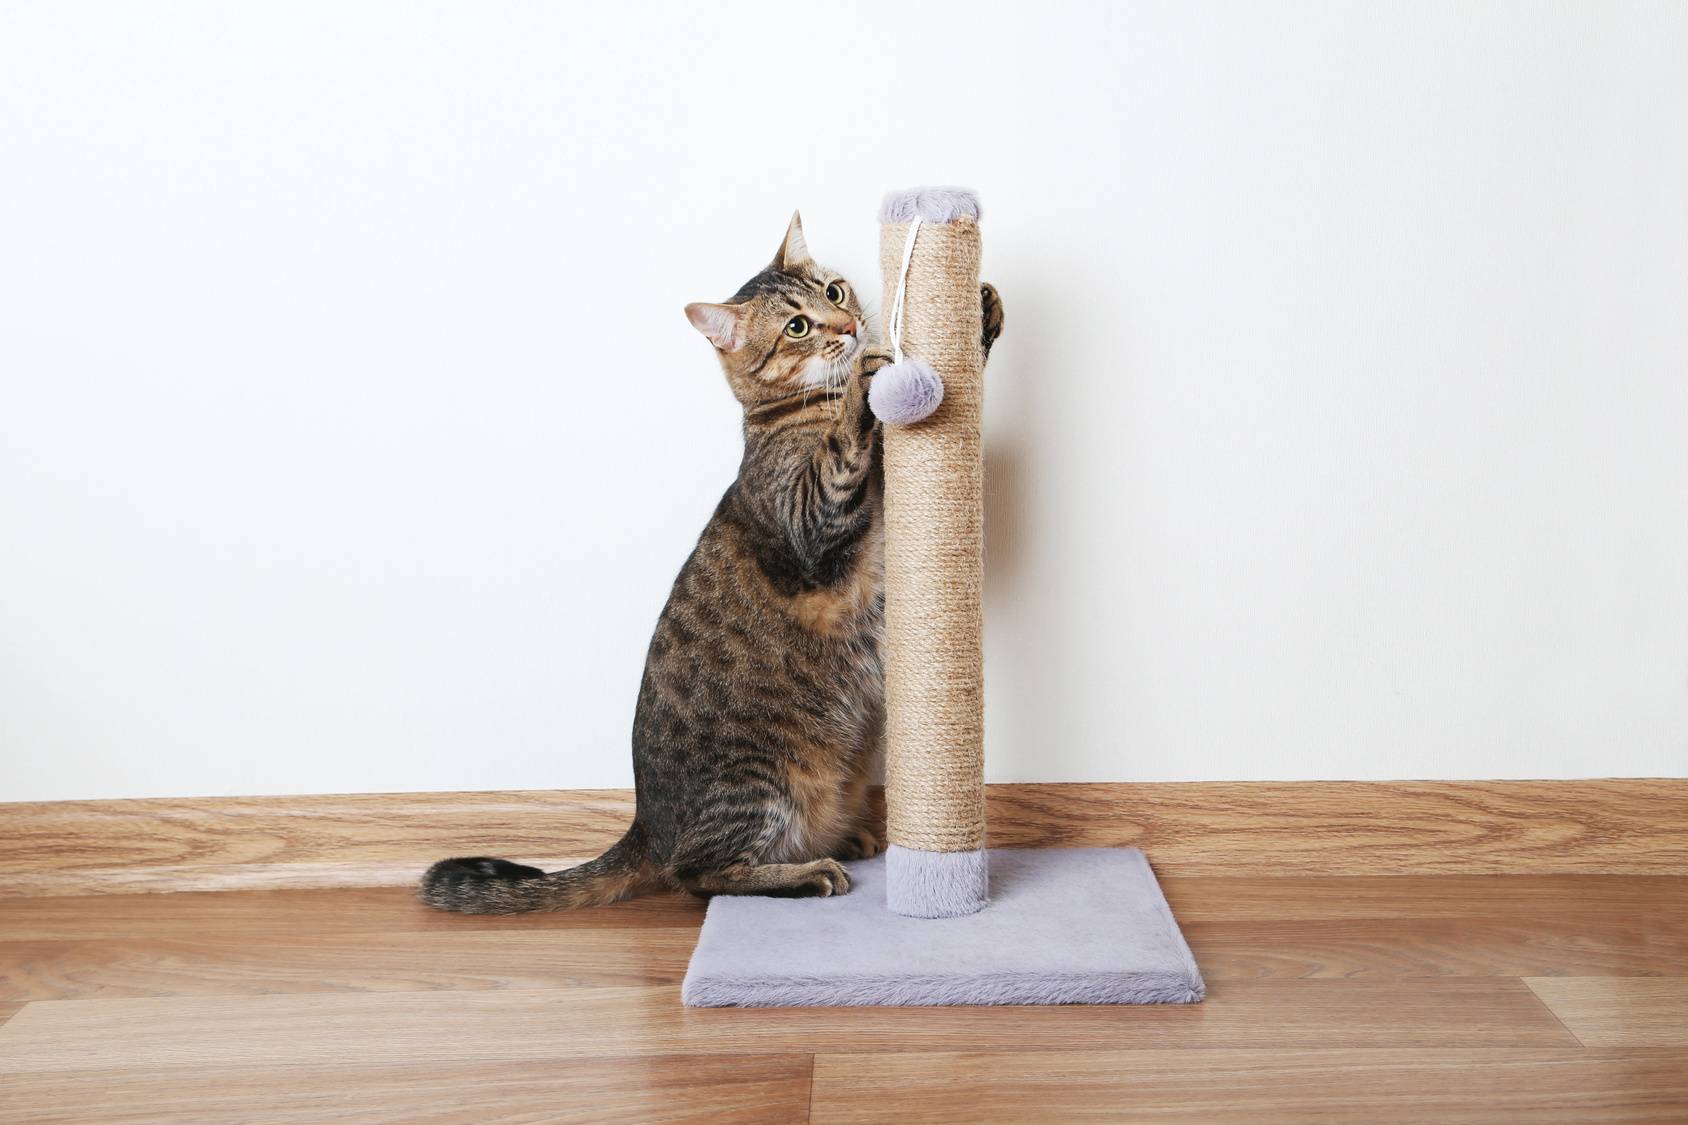 Как отучить кота драть обои и мебель. 6 причин